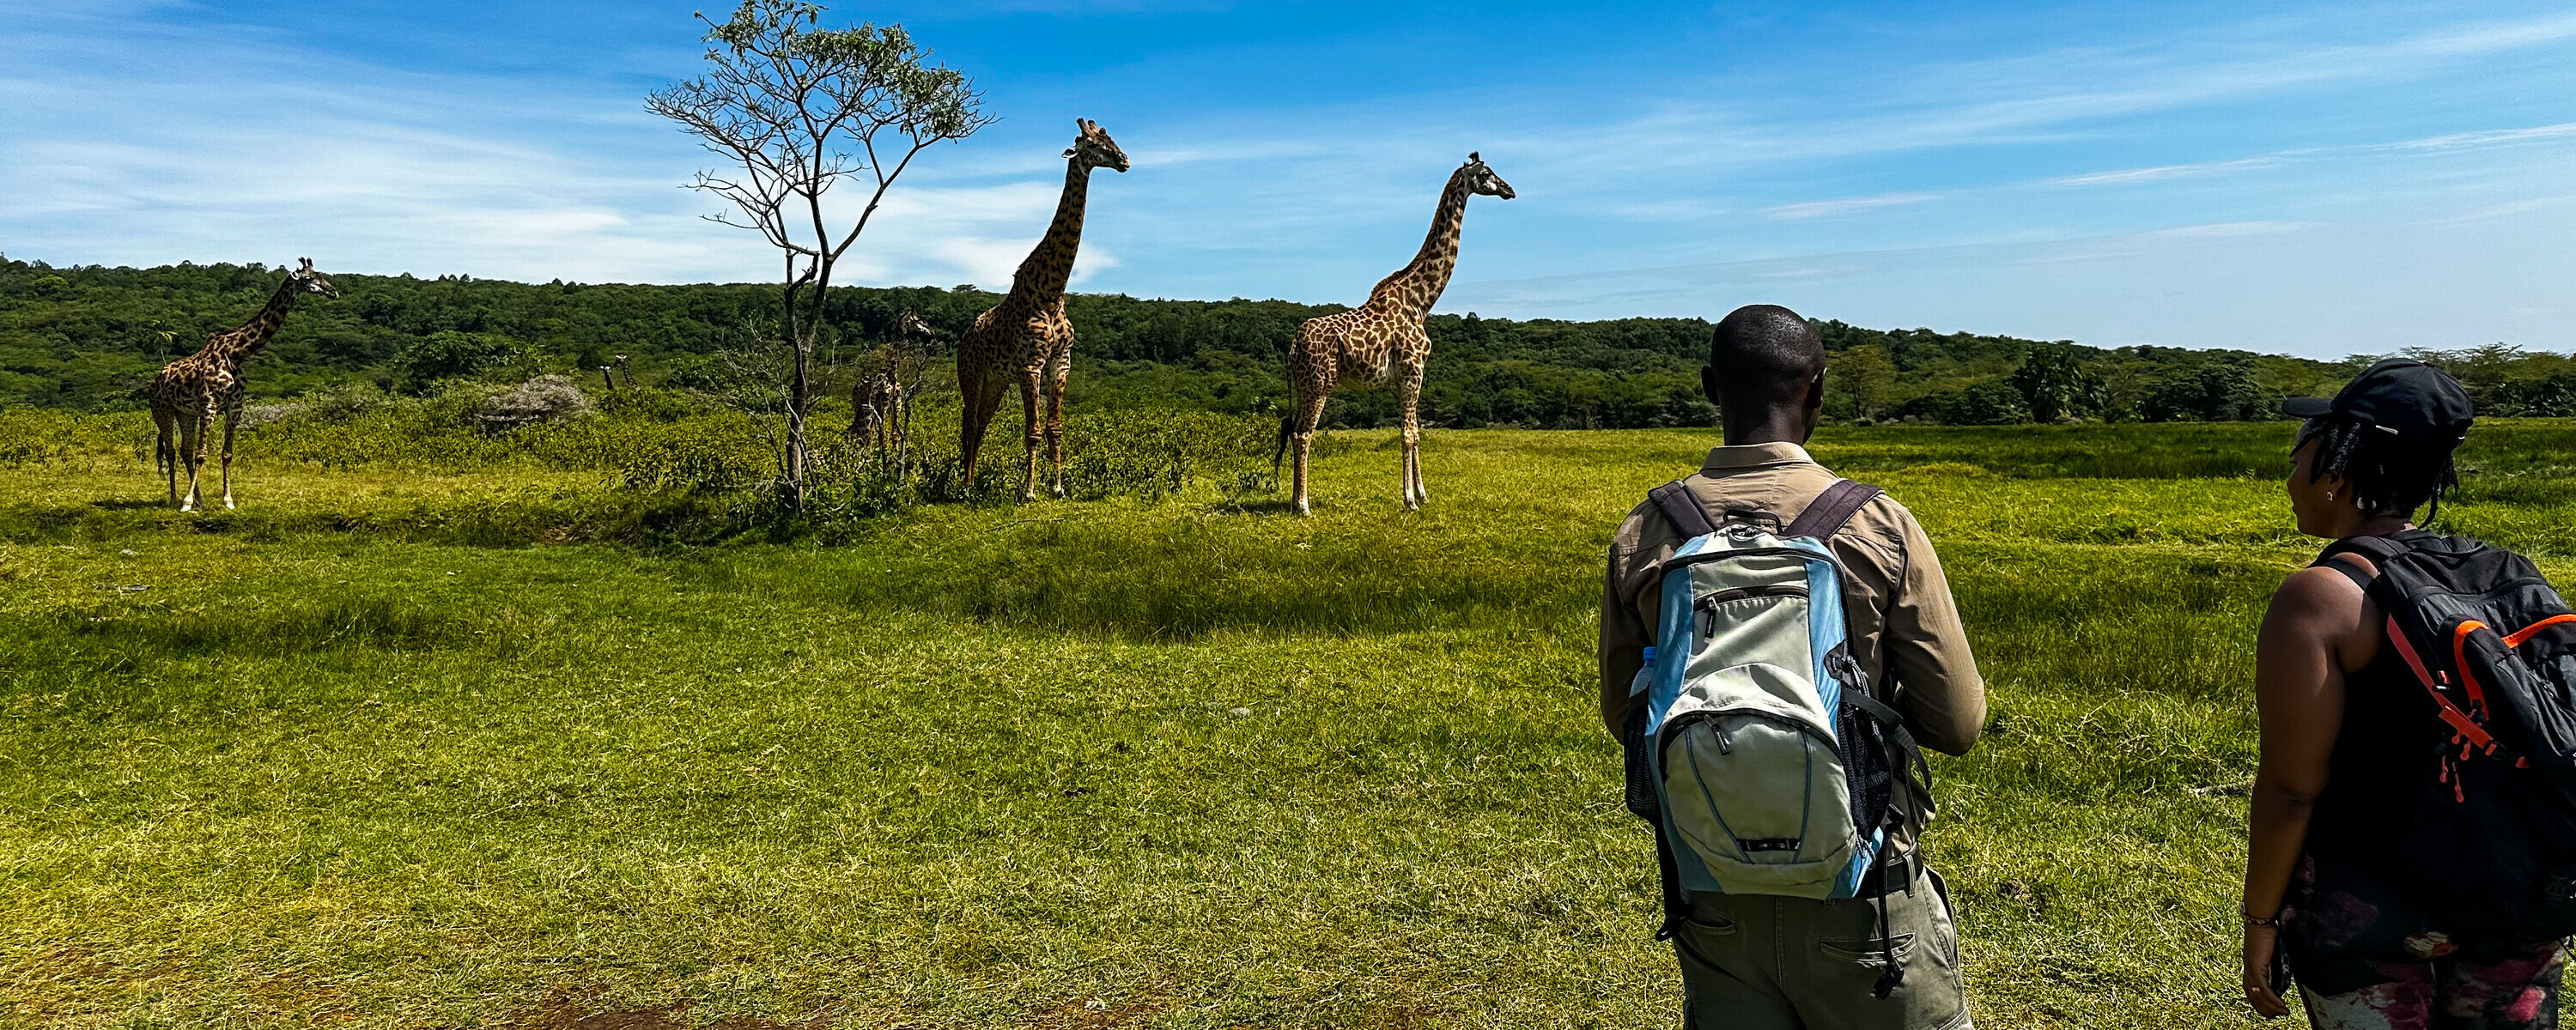 På safari til fots i Arusha Nasjonalpark kommer vi tett på dyrelivet